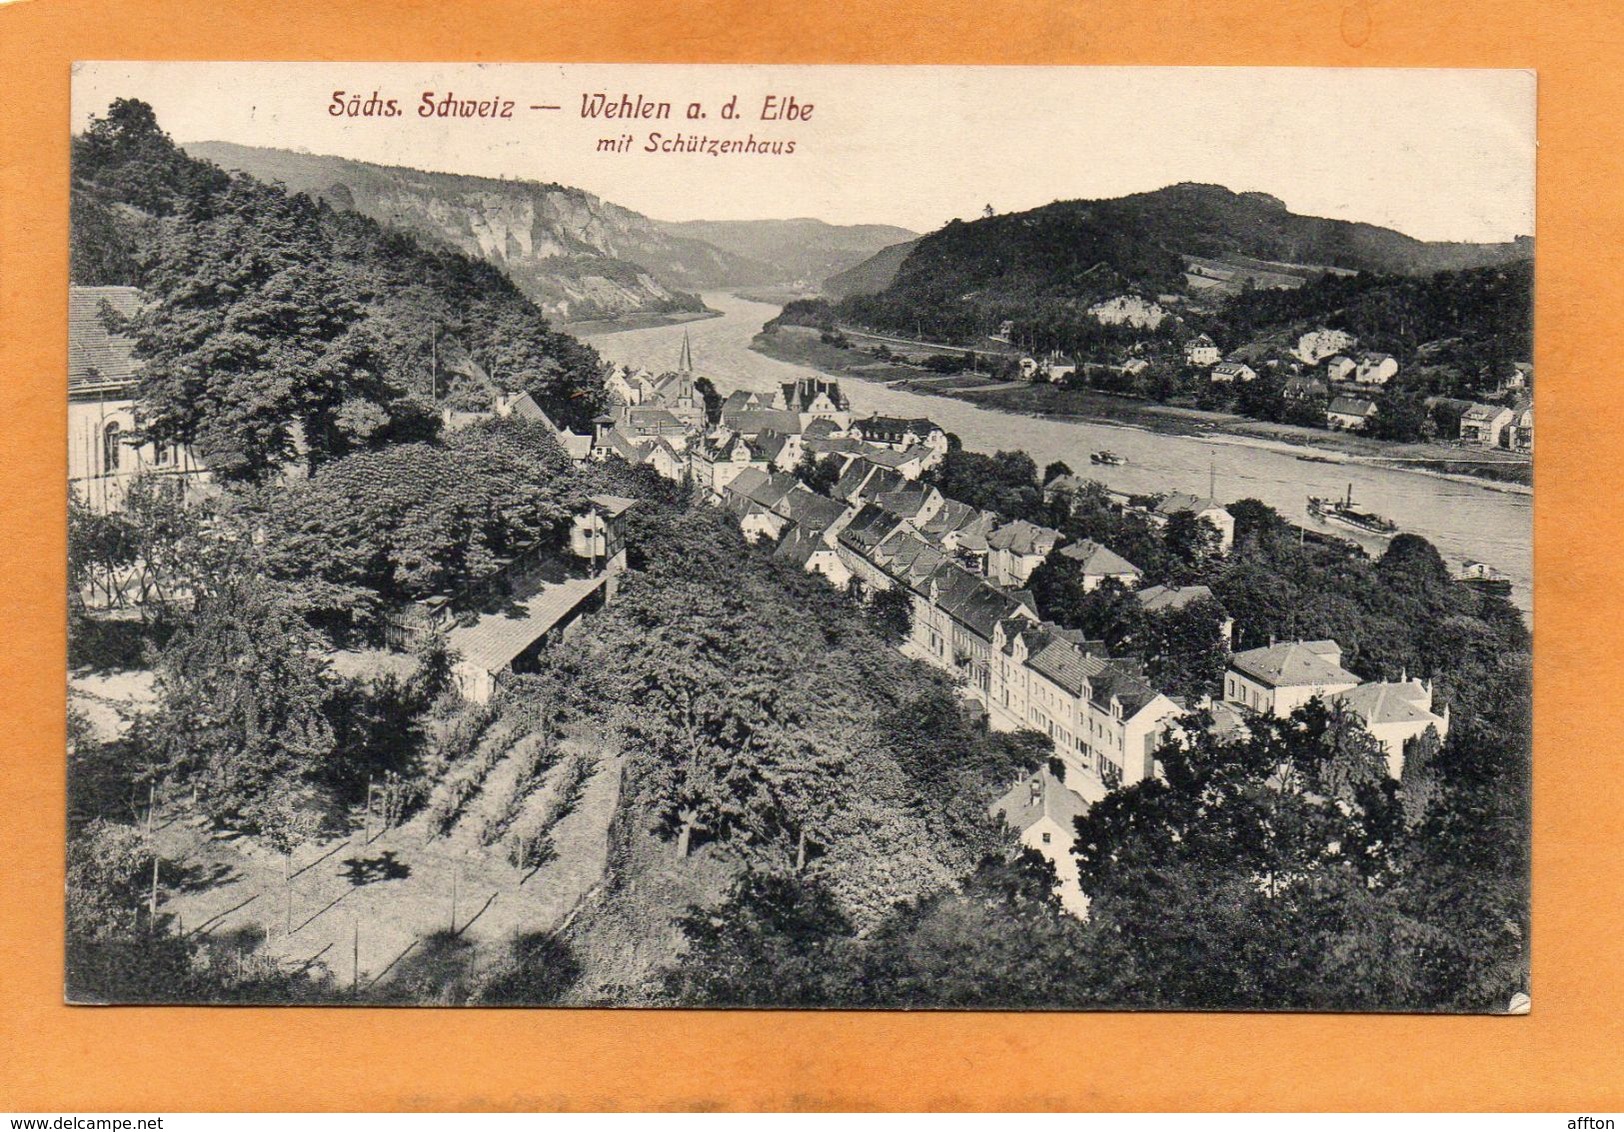 Wehlen E.d Elbe Germany 1917 Postcard - Wehlen